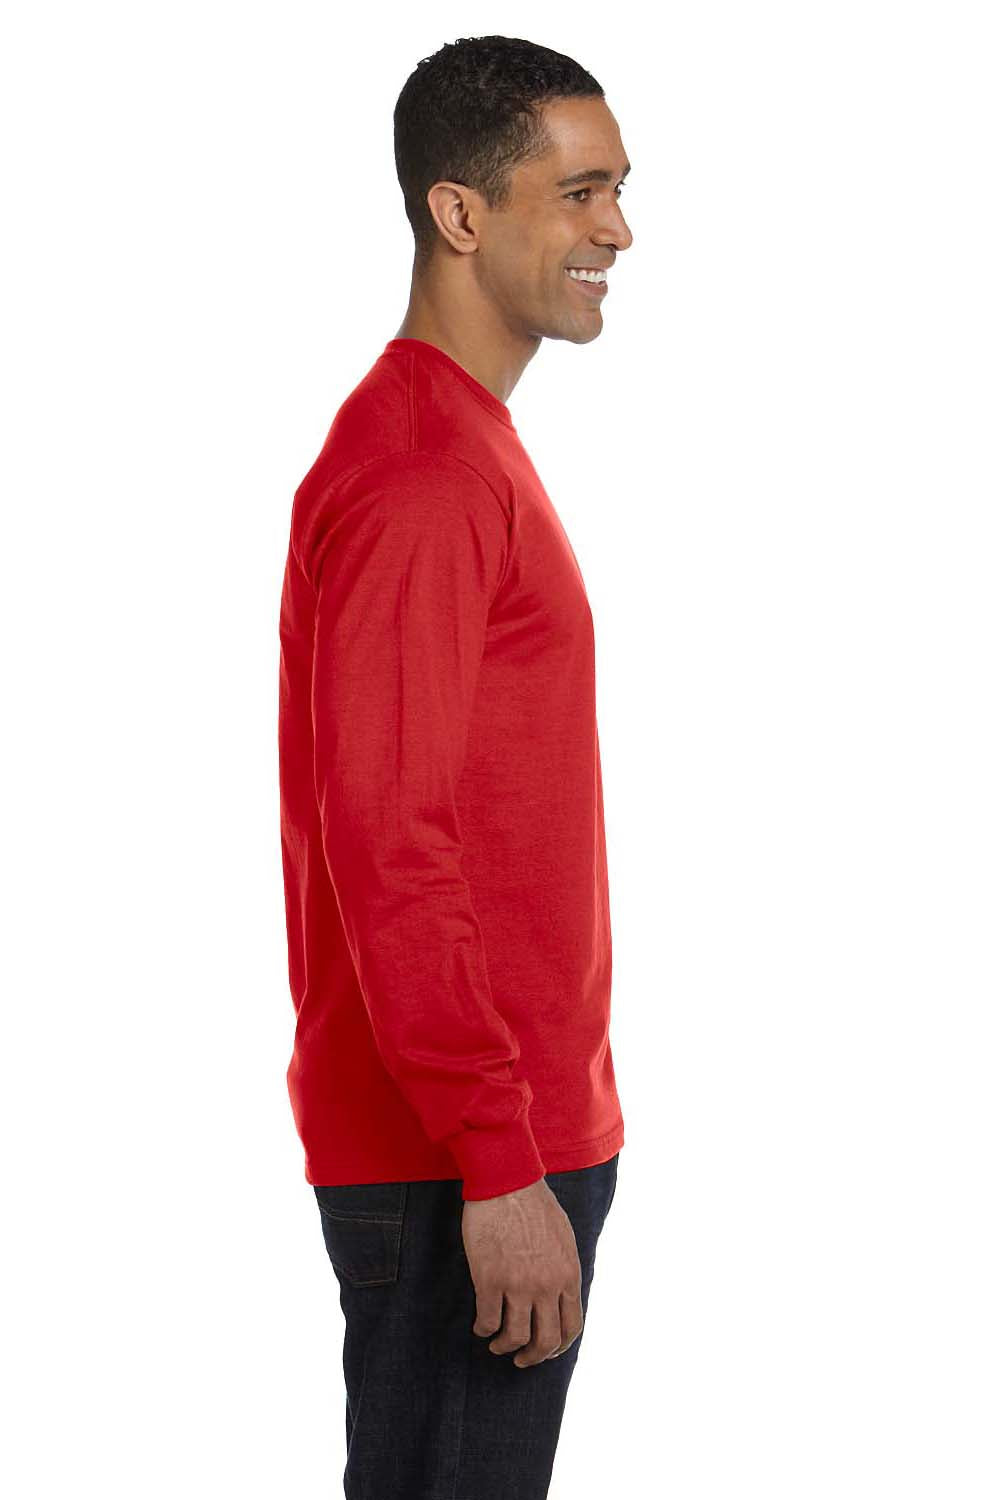 Gildan G840 Mens DryBlend Moisture Wicking Long Sleeve Crewneck T-Shirt Red Side